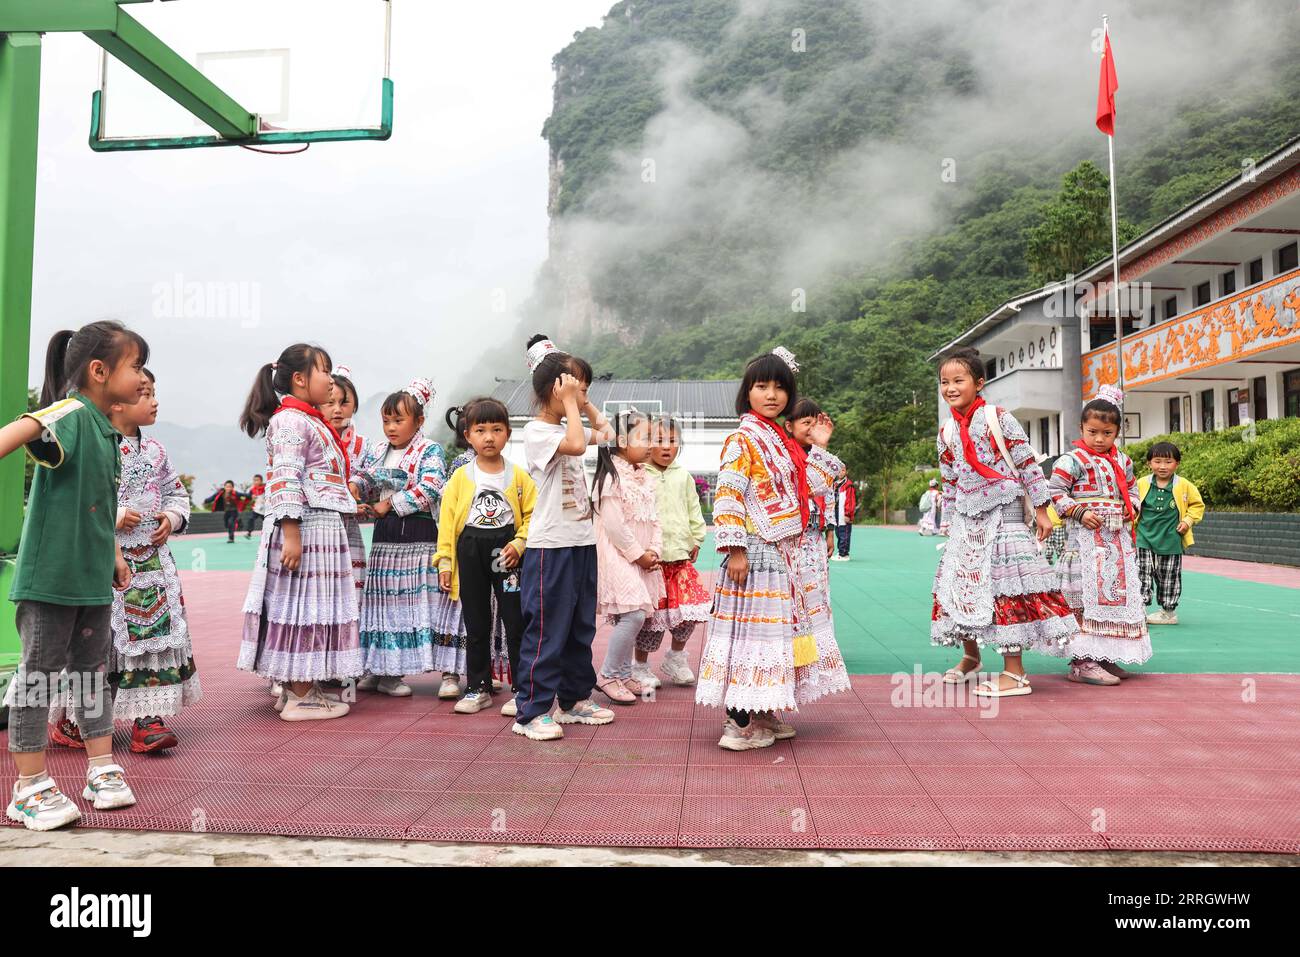 220601 -- GUIZHOU, le 1 juin 2022 -- Yang Yameng 3rd R est vue avec ses camarades de classe dans une école primaire du village de Huawu, dans le canton de Xinren Miao, ville de Qianxi, province du Guizhou au sud-ouest de la Chine, le 1 juin 2022. Yang Yameng est un élève vivant dans le village de Huawu, dans la province du Guizhou du sud-ouest de la Chine. Sa ville natale était autrefois un village extrêmement pauvre. Ces dernières années, grâce à un ensemble de politiques de soutien, la pauvreté a été éliminée dans le village en stimulant les industries de culture et d’élevage ainsi que la promotion du tourisme, et les villageois ont déjà accès aux routes, à l’approvisionnement en eau, aux élus Banque D'Images